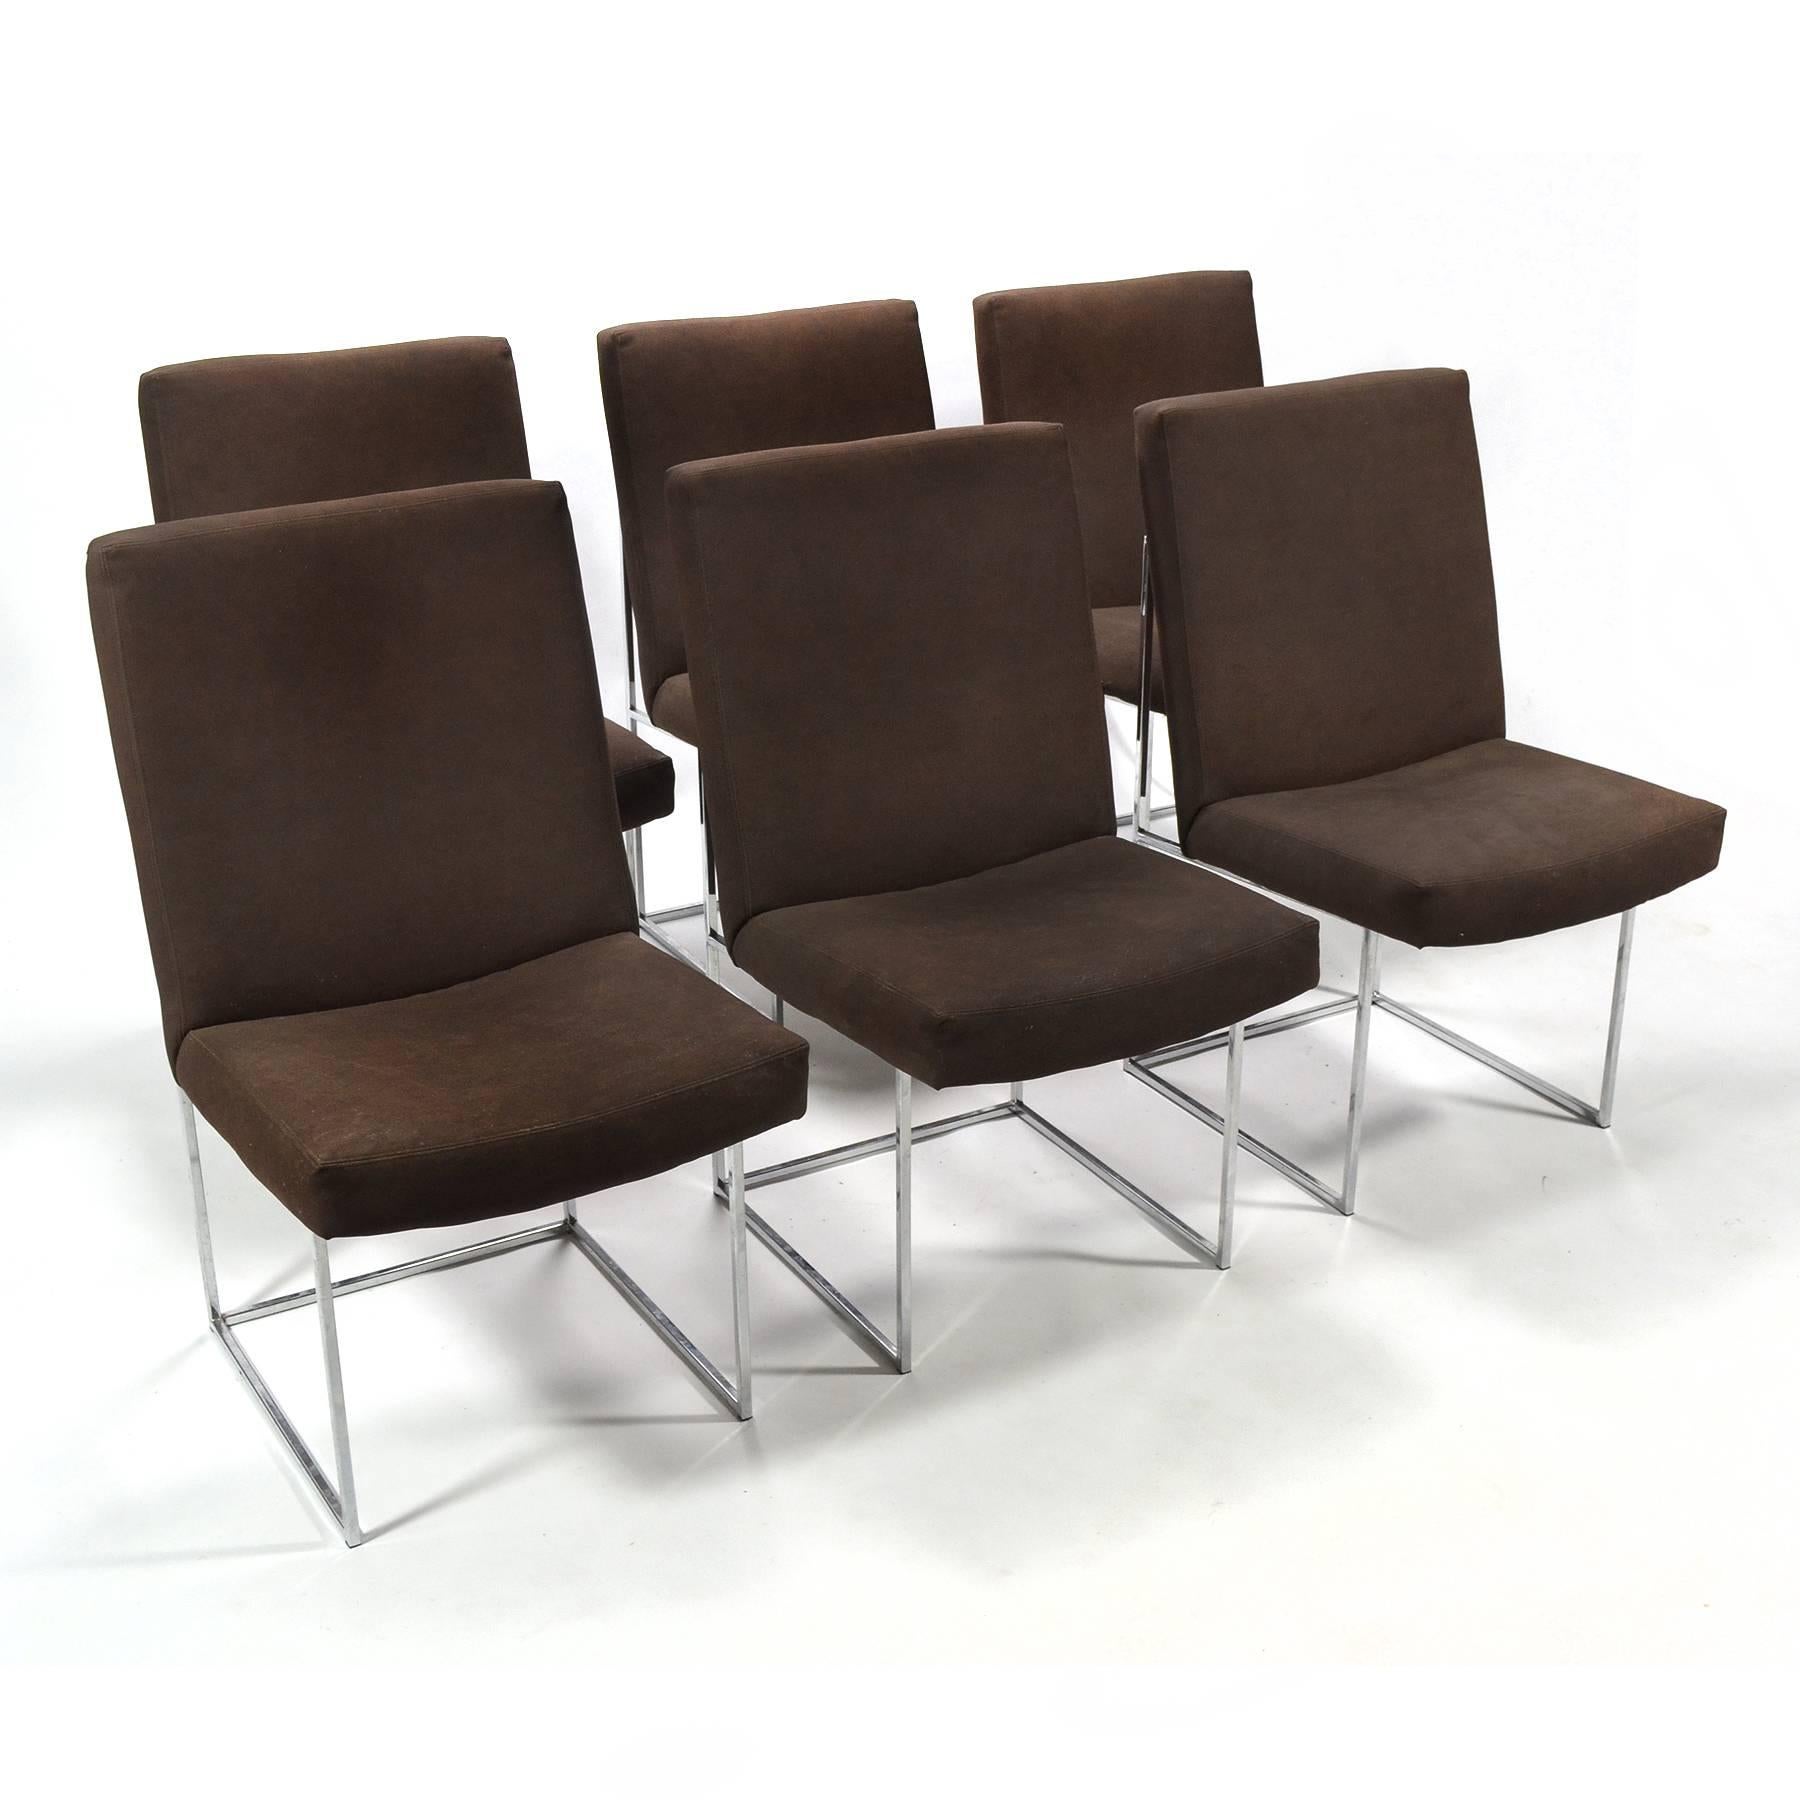 Dies ist einer unserer Lieblingsentwürfe von Milo Baughman. Diese Esszimmerstühle haben ein schönes, architektonisches Gestell aus poliertem, verchromtem Vierkantstahl, das einen gepolsterten Sitz und eine gepolsterte Rückenlehne trägt. Das klare,